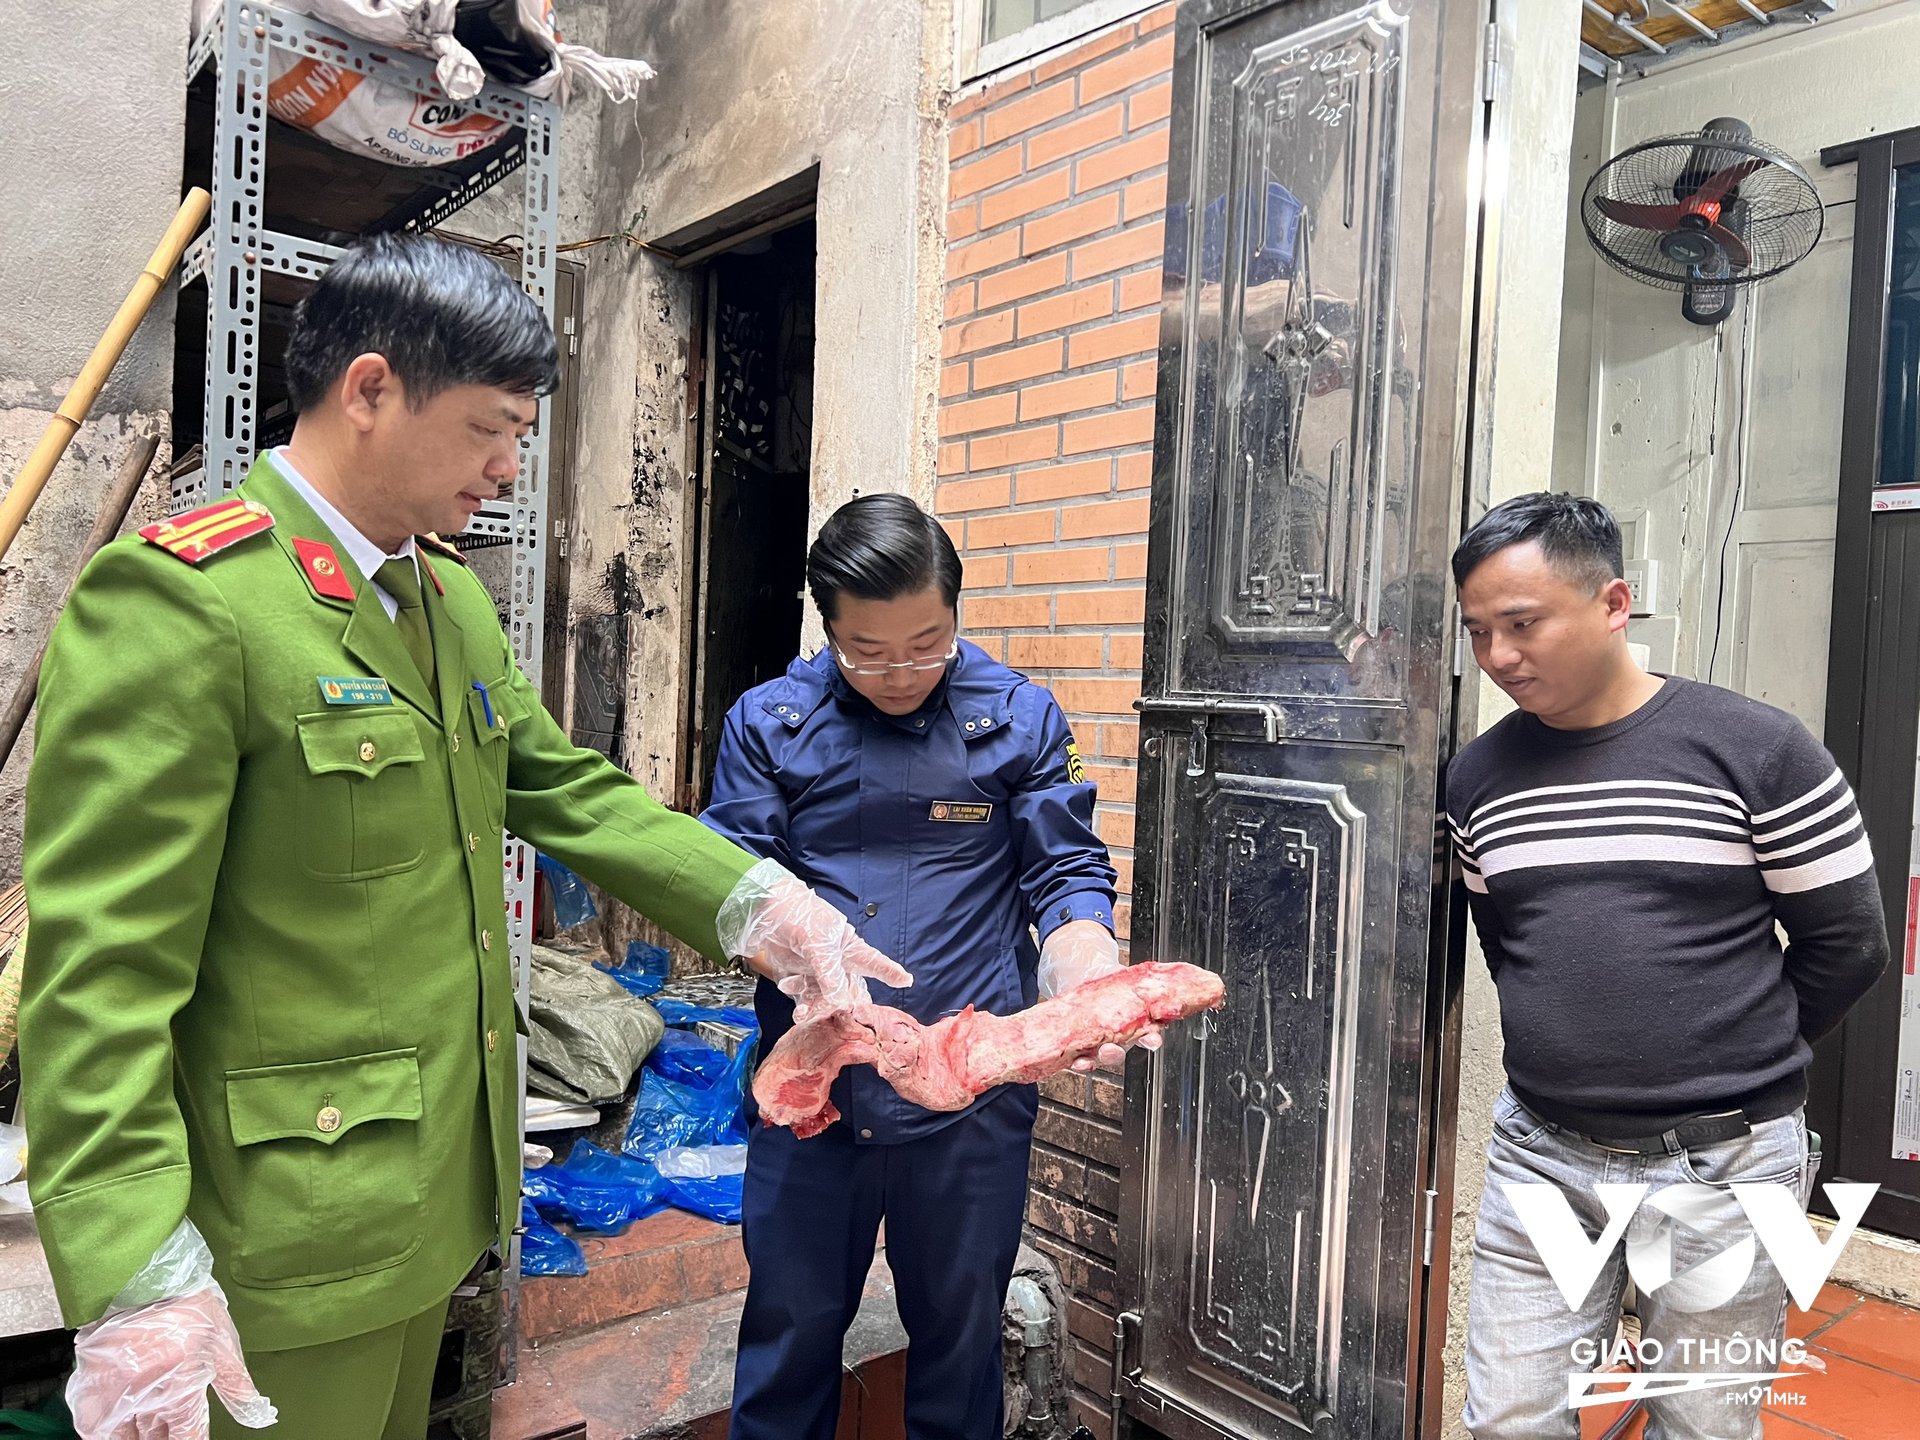 Các lực lượng chức năng thu giữ số nầm lợn không đảm bảo chất lượng, không rõ nguồn gốc tại cơ sở kinh doanh thực phẩm tại số 46 Trần Nhật Duật, quận Hoàn Kiếm.